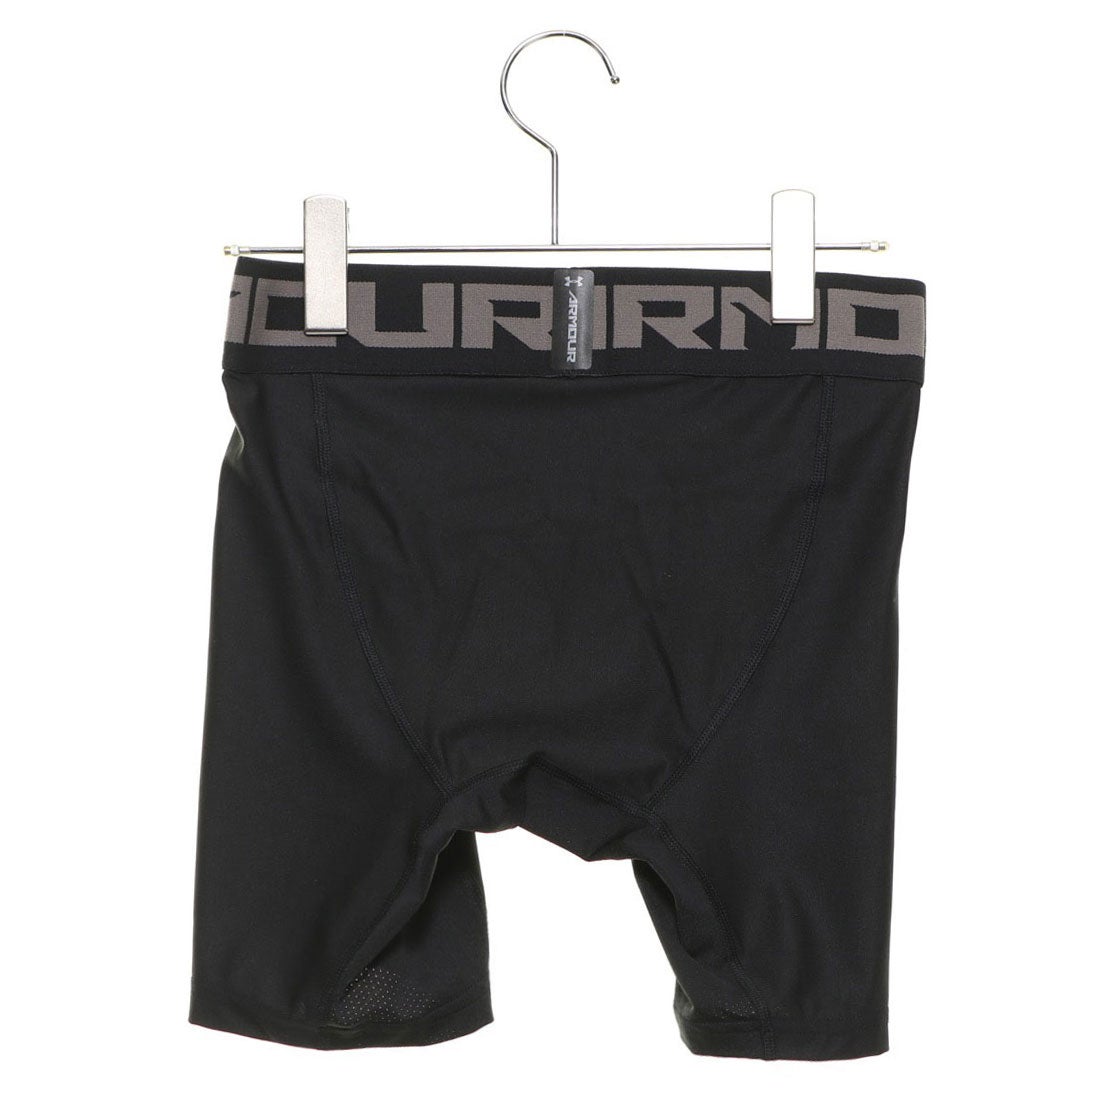 アンダーアーマー UNDER ARMOUR メンズ フィットネス コンプレッションショートタイツ スパッツ UA HG Armour Shorts